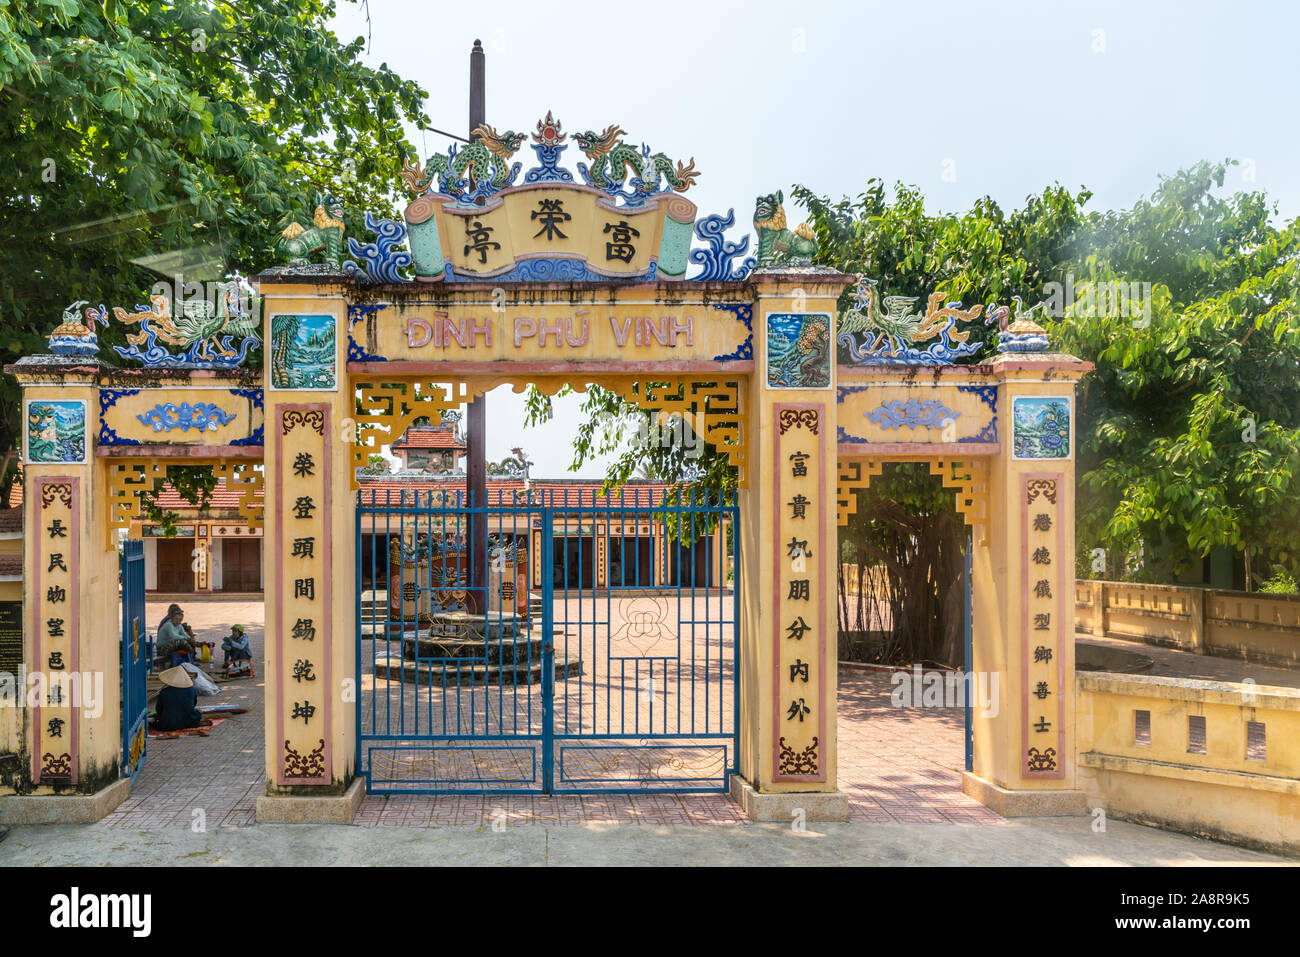 Nha Trang, Vietnam - Marzo 11, 2019: Dinh Phu Vinh centro comunitario e di celebrazione hall. Giallo cancello di ingresso con dipinti e statue di drago e me Foto Stock